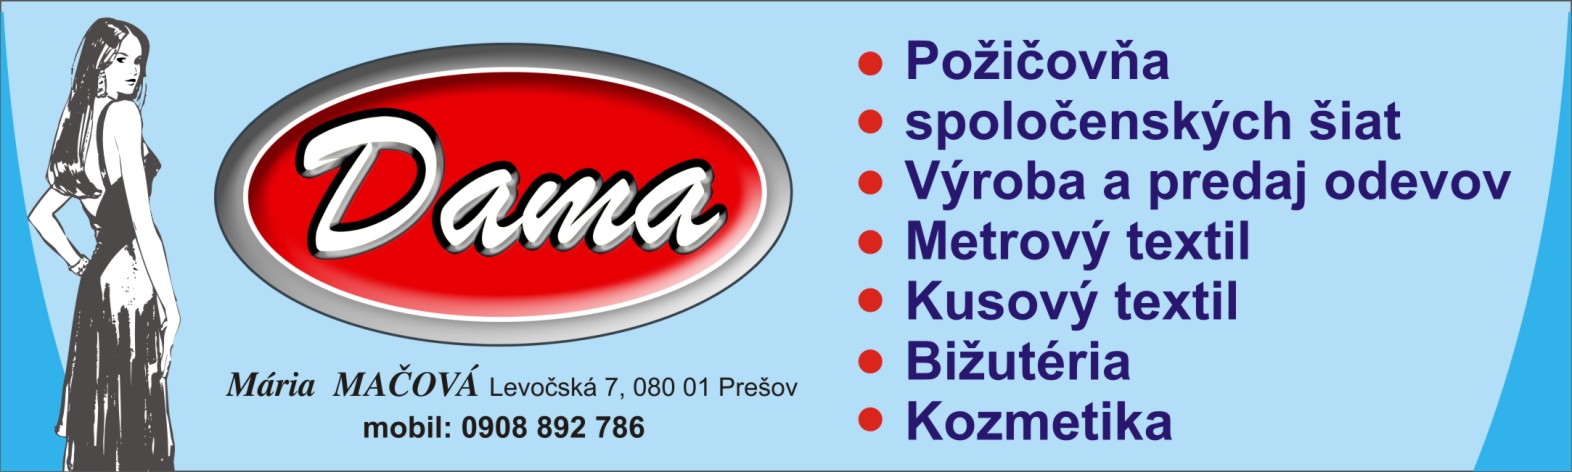 Reklamná tabuľa - Dama (Prešov)